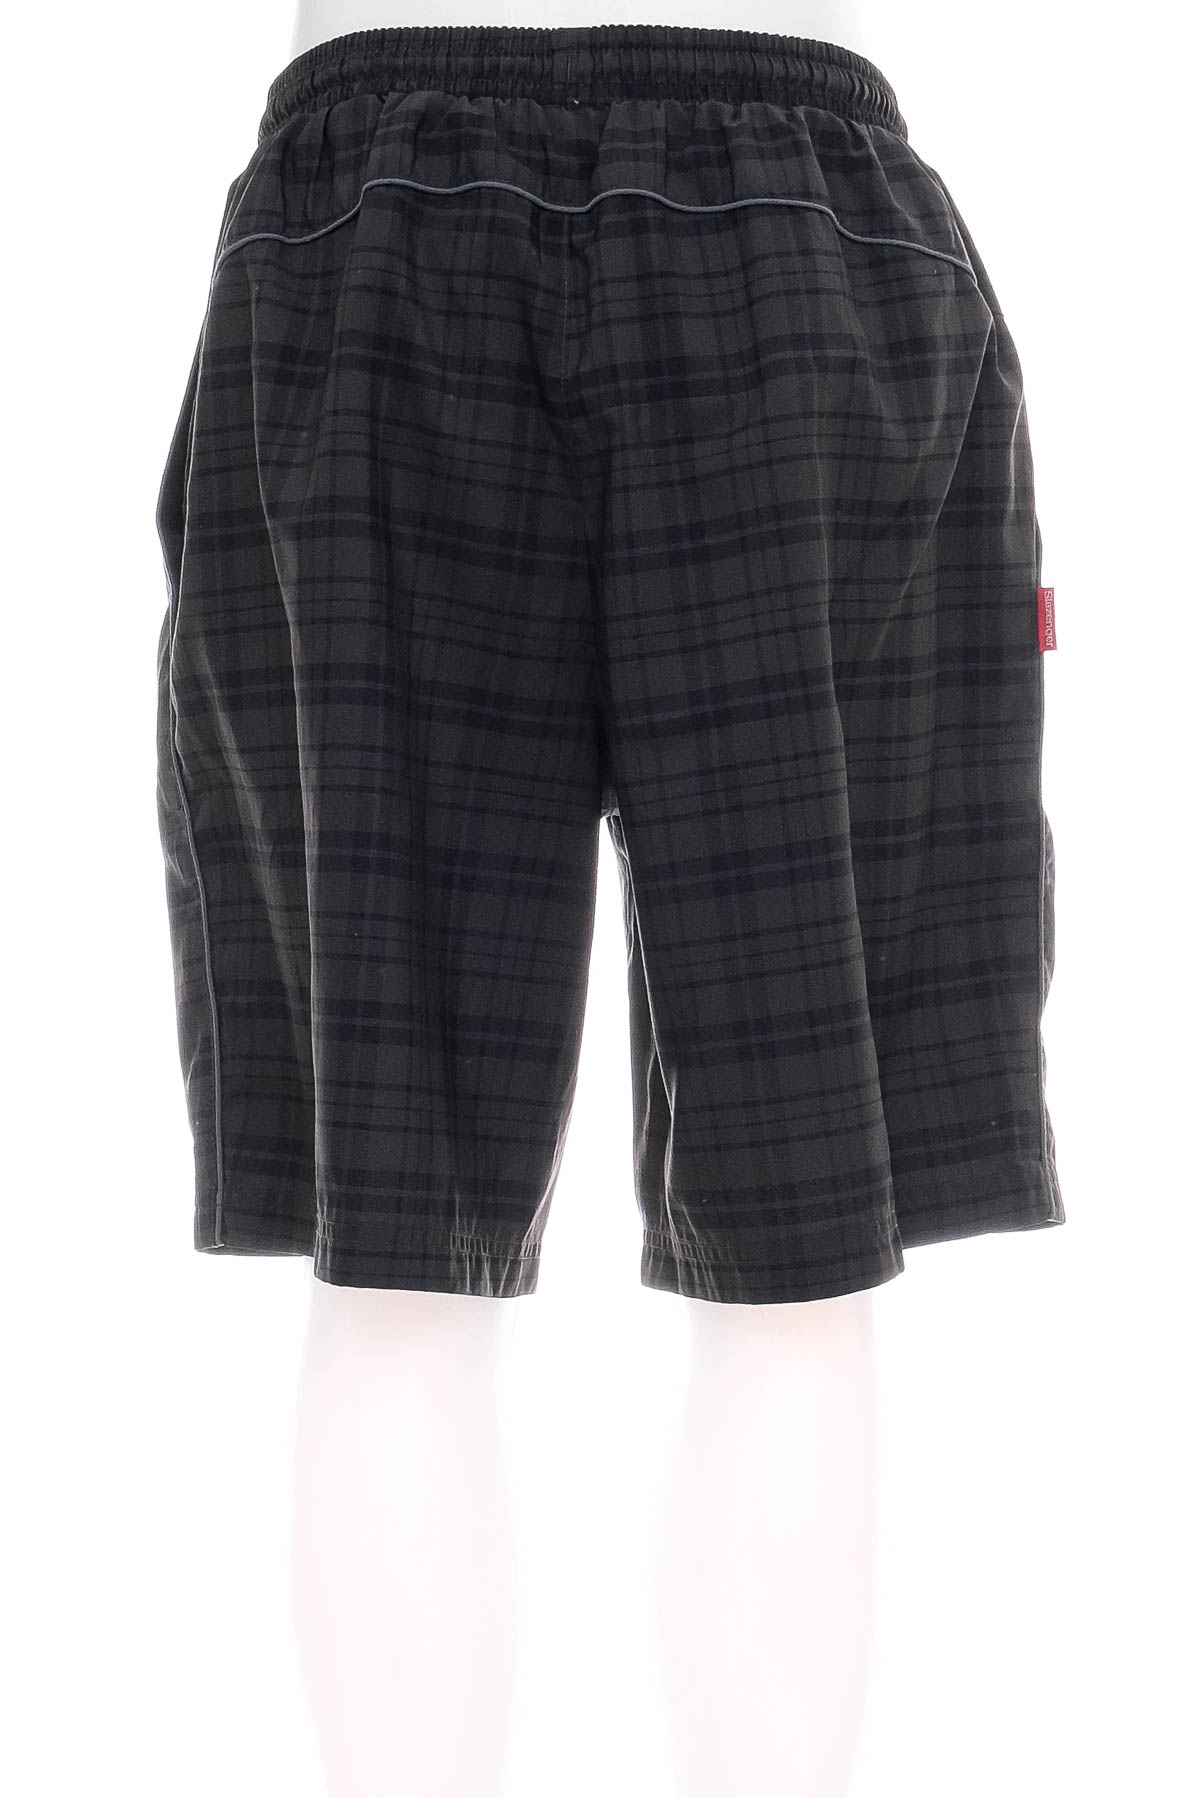 Men's shorts - Slazenger - 1